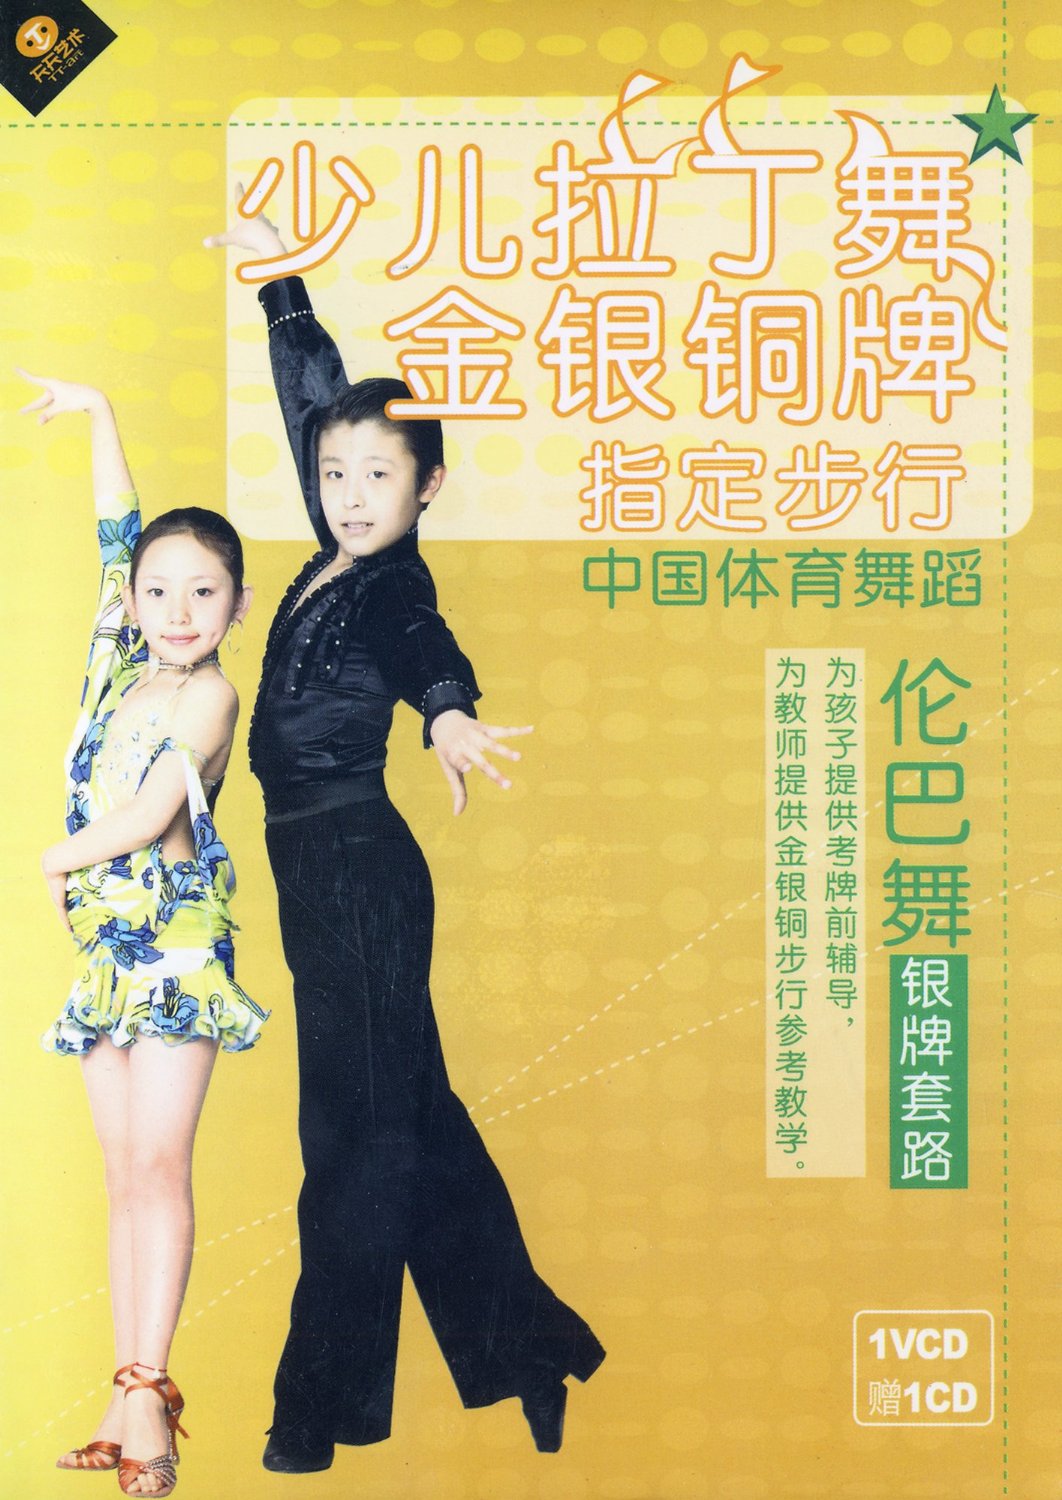 少兒拉丁舞金銀銅牌指定步行中國體育舞蹈倫巴舞銀牌套路(1VCD+1CD)